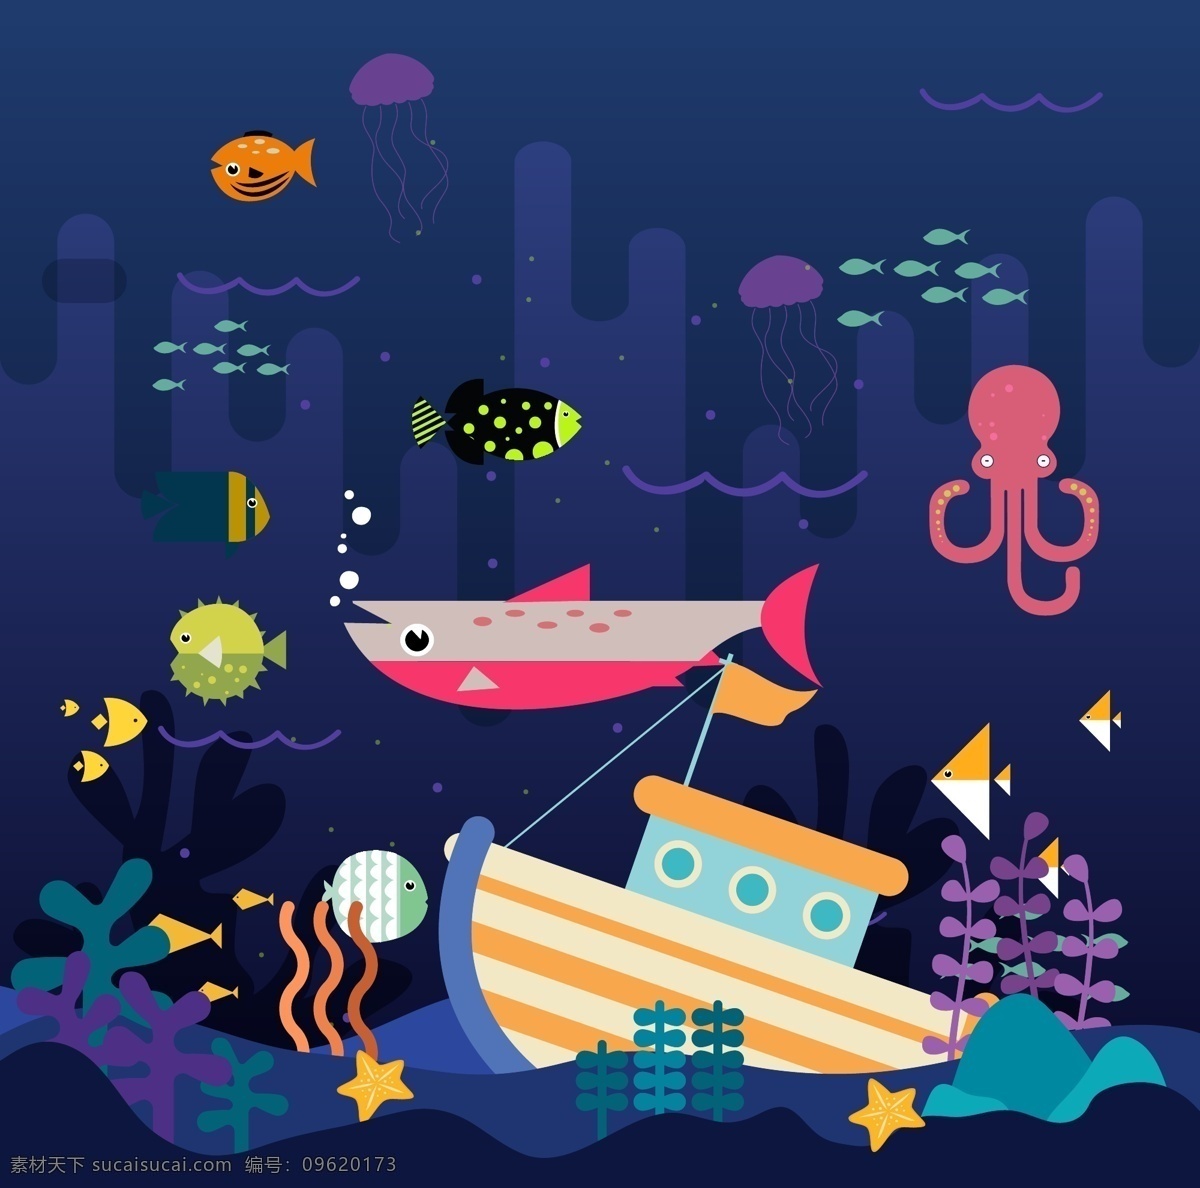 创意做旧效果 海底世界 鱼 水母 章鱼 河豚 沉船 水草 珊瑚 大海 创意 做旧效果 海底 海星 矢量图 ai格式